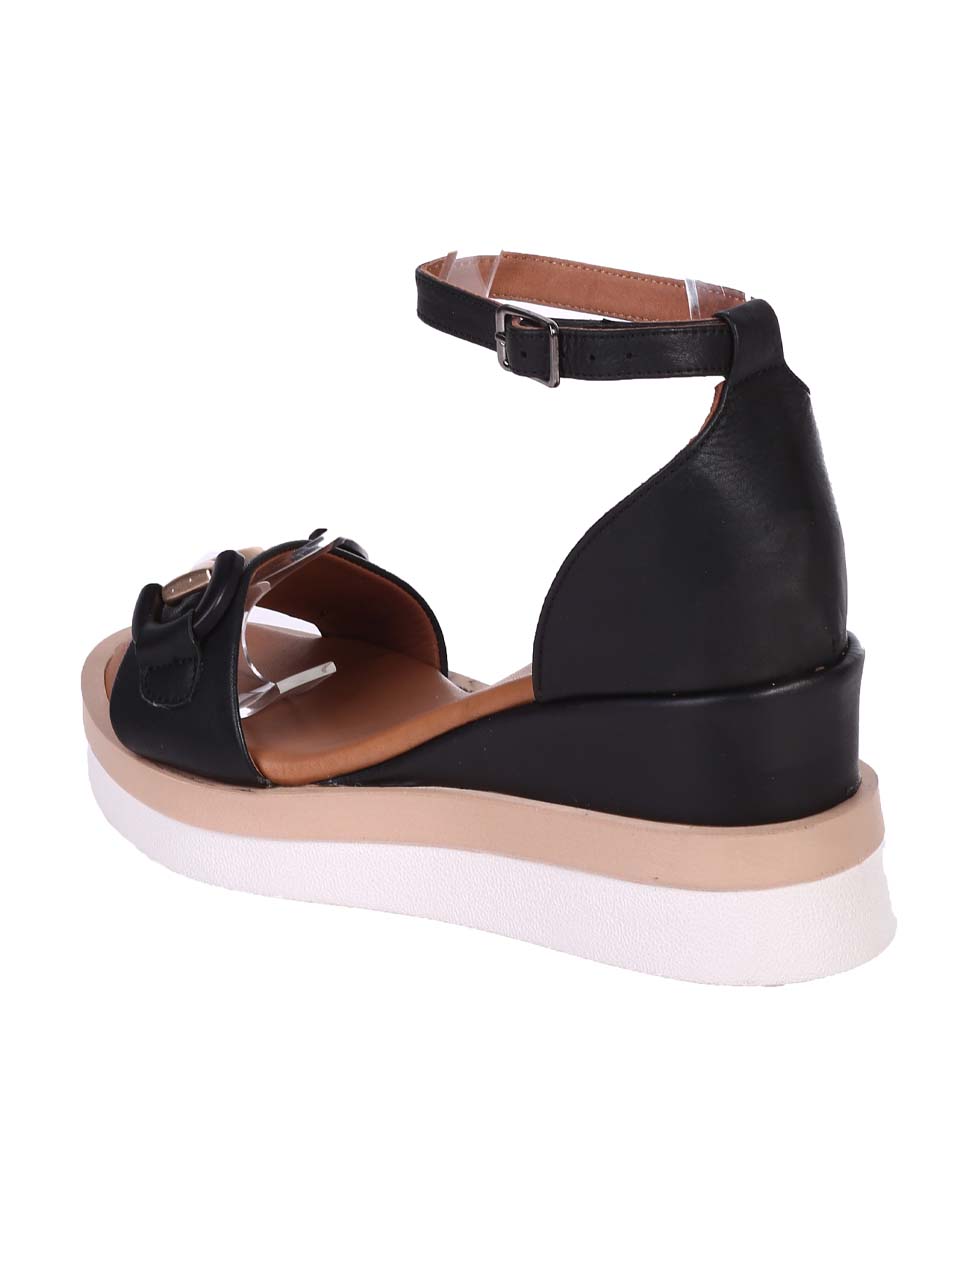 Ежедневни дамски сандали на платформа от естествена кожа в черно 4AT-24344 black